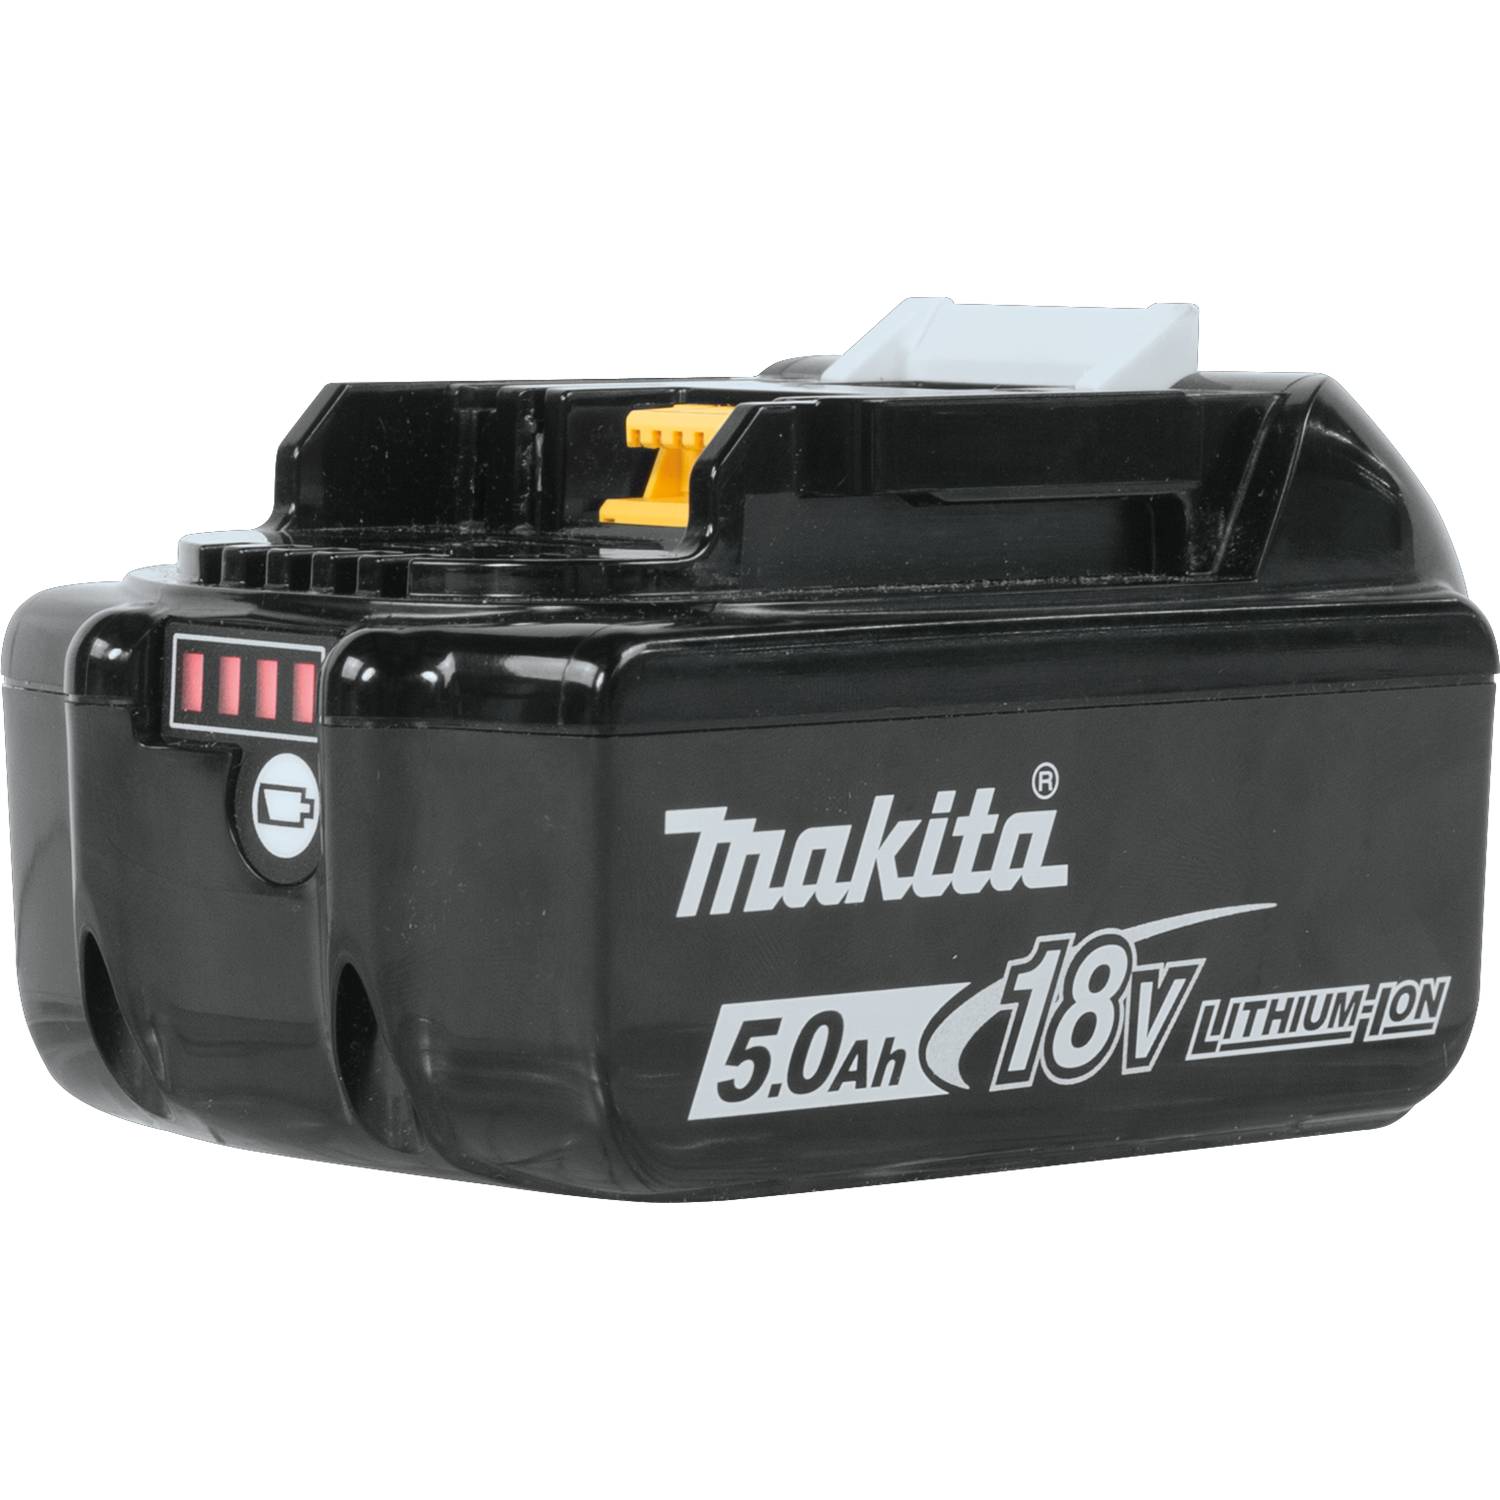 BL1850B-2 Makita Battery Pack, 18V 5.0AH 2